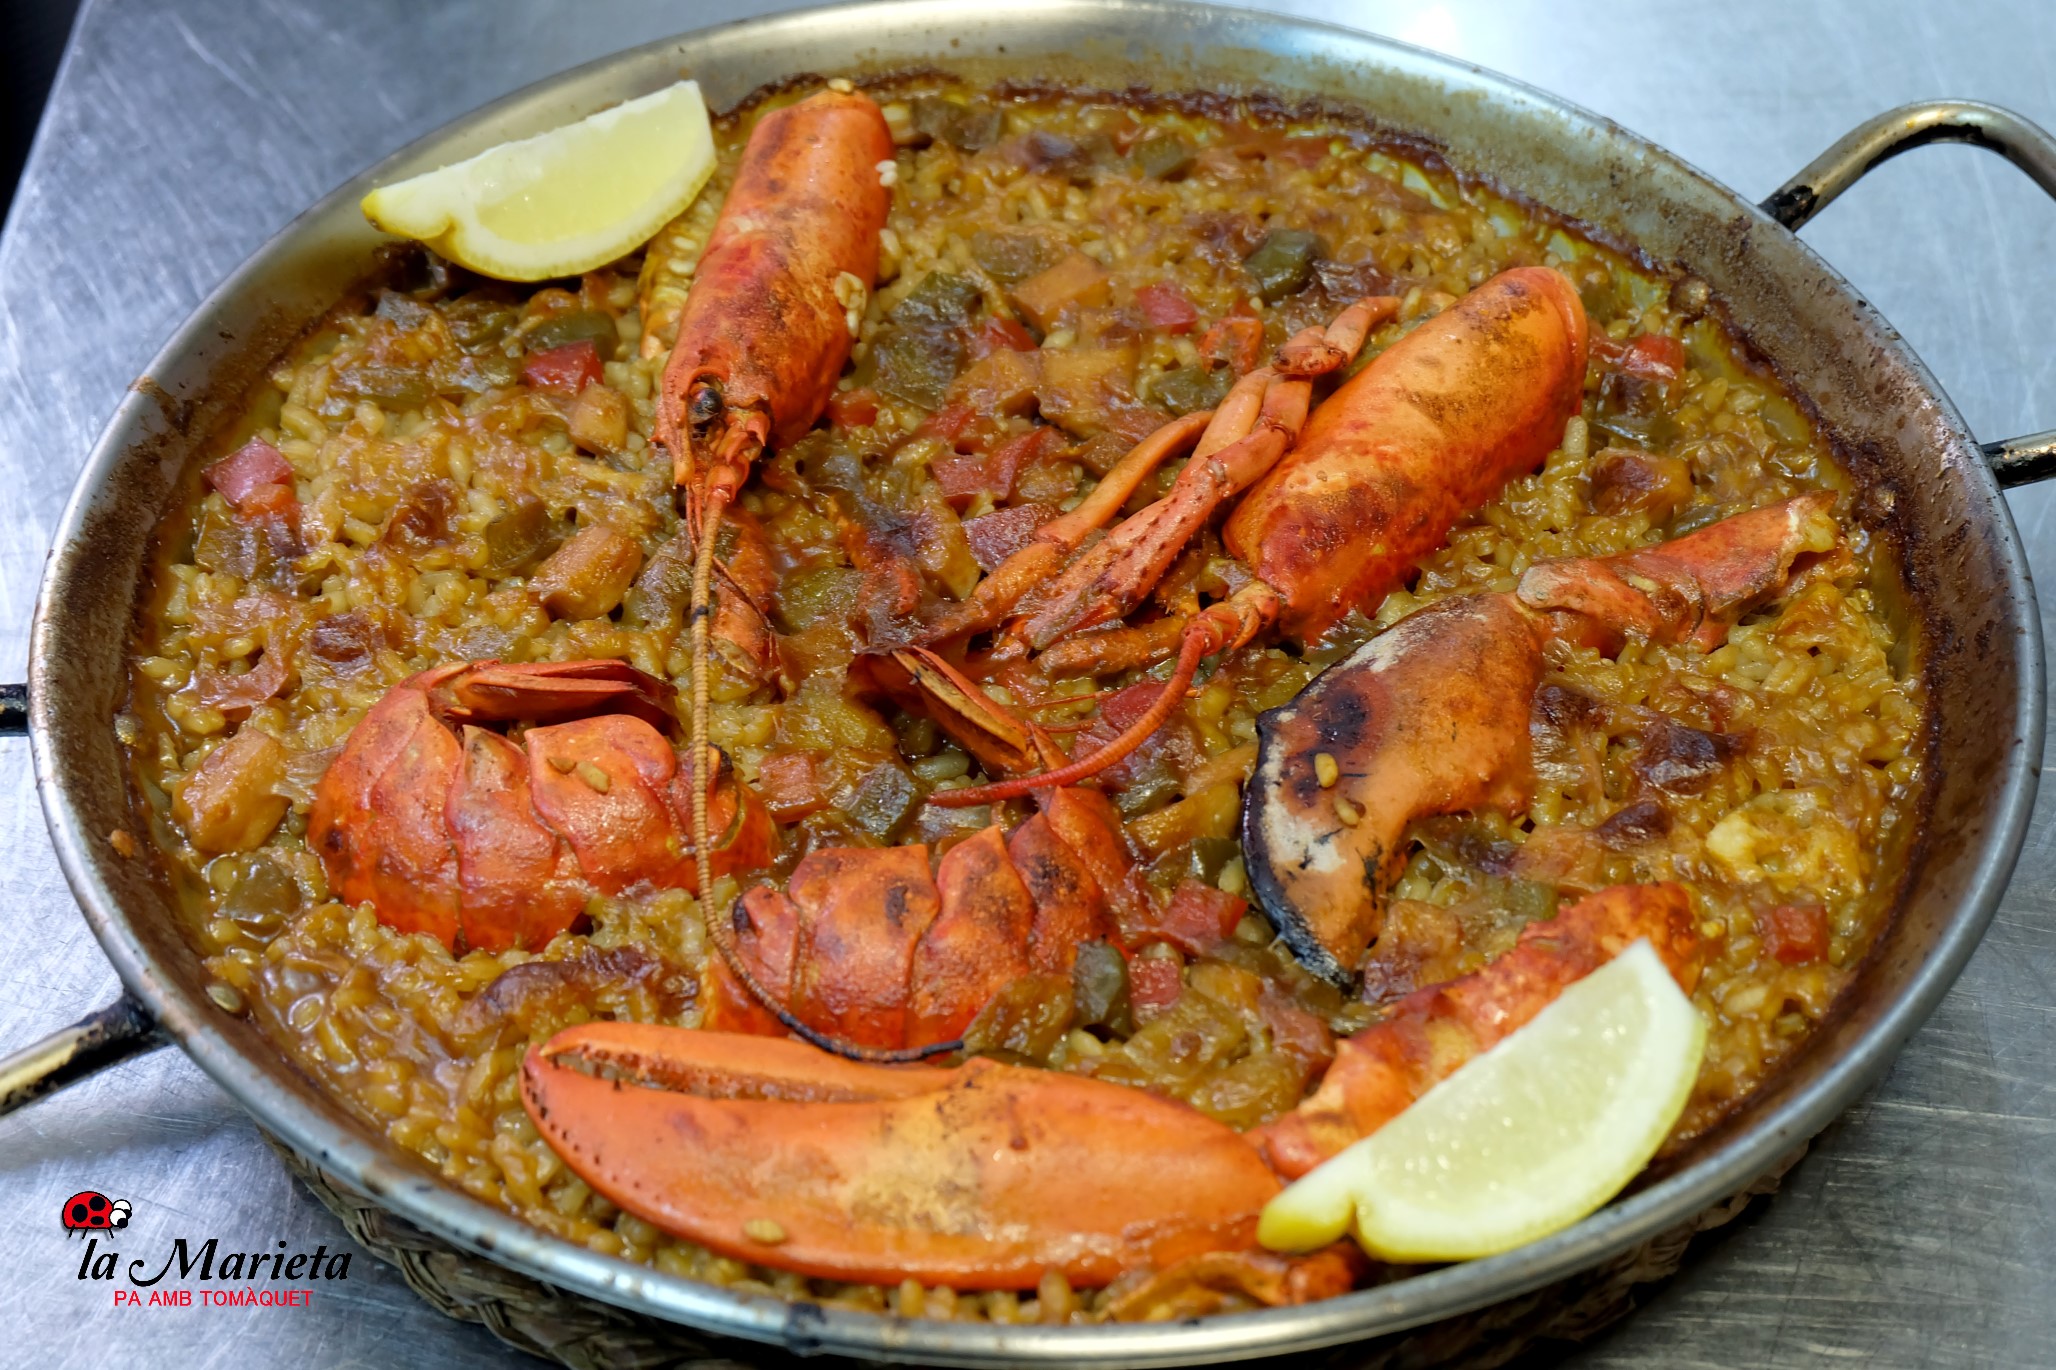 La mejor paella de bogavante de Mollet del Vallès, Barcelona, para celebraciones, para disfrutar los platos del mar